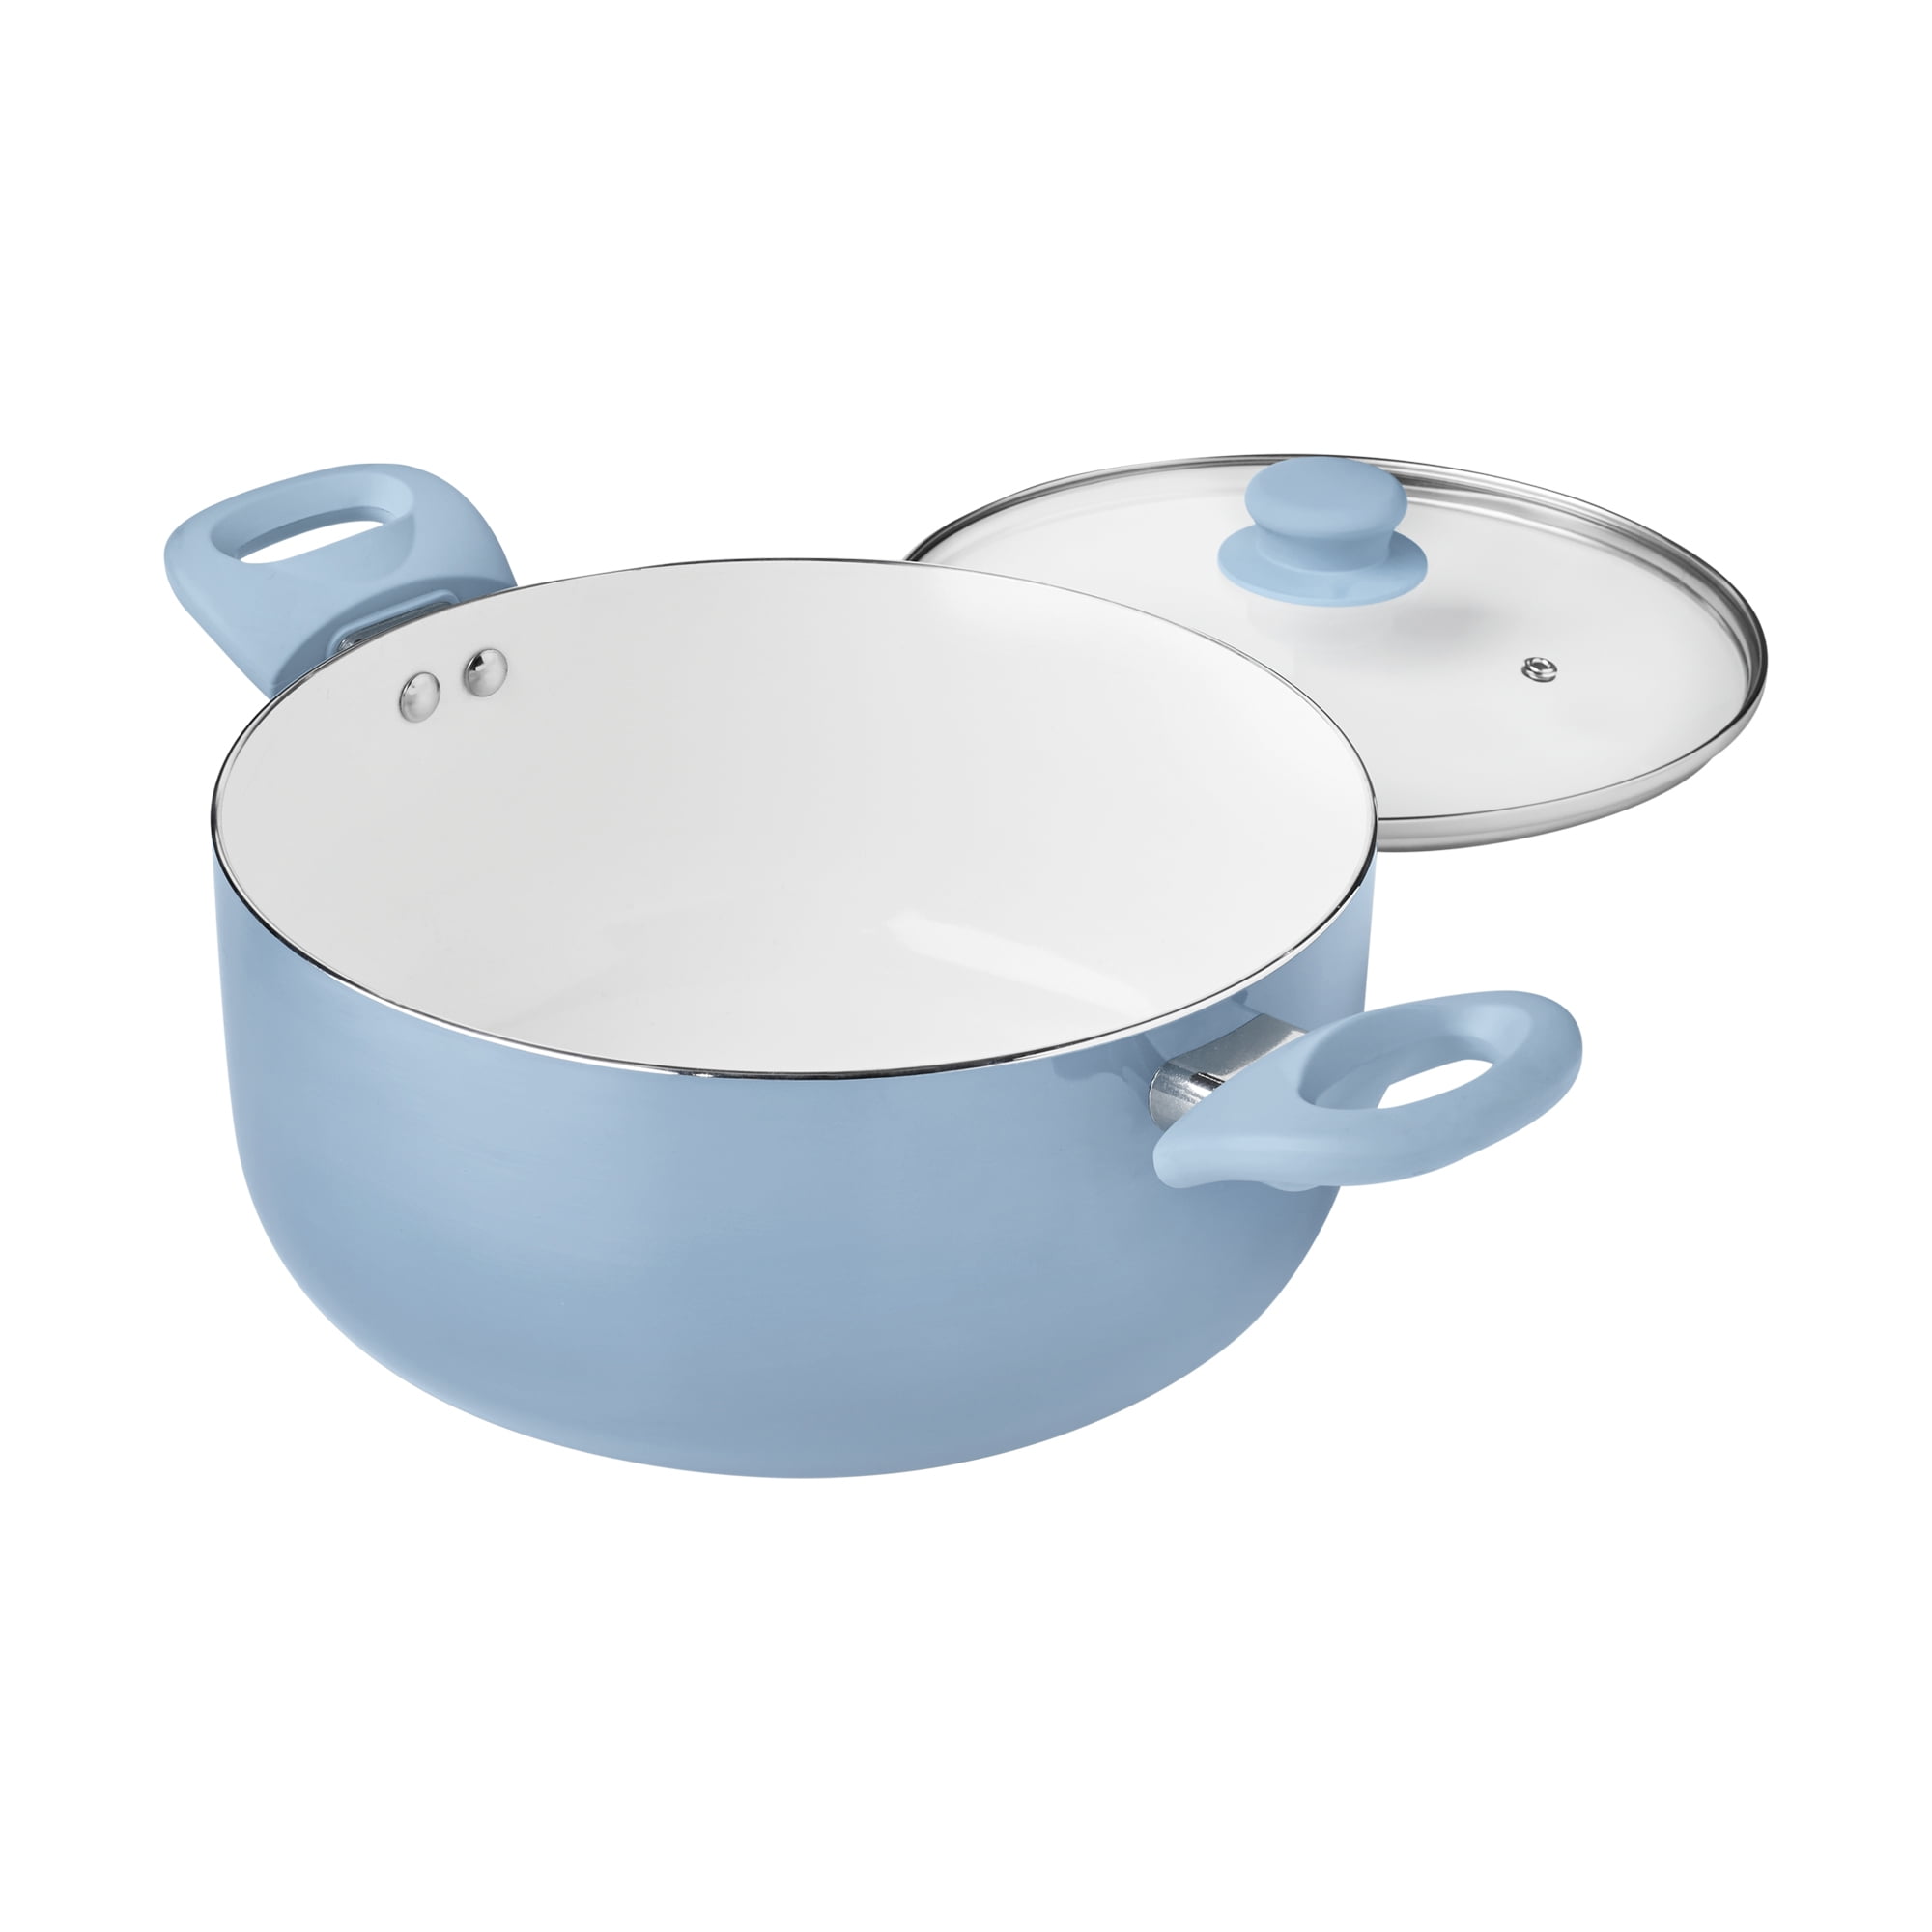 Fingerhut - 12-Pc. Nonstick Aluminum Cookware Set - Metallic Blue